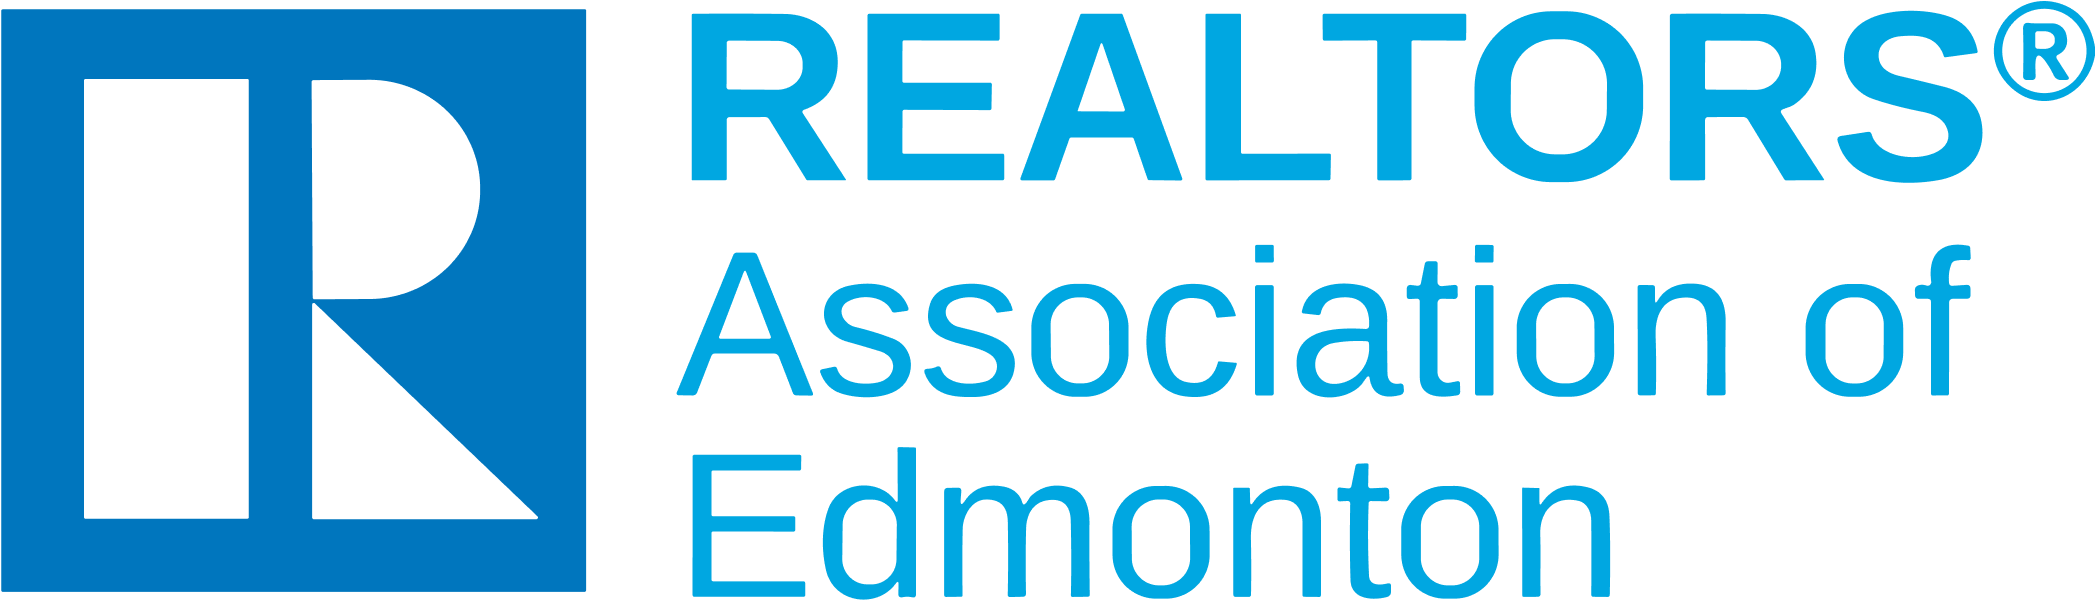 Logo for REALTORS Association of Edmonton on a transparent background